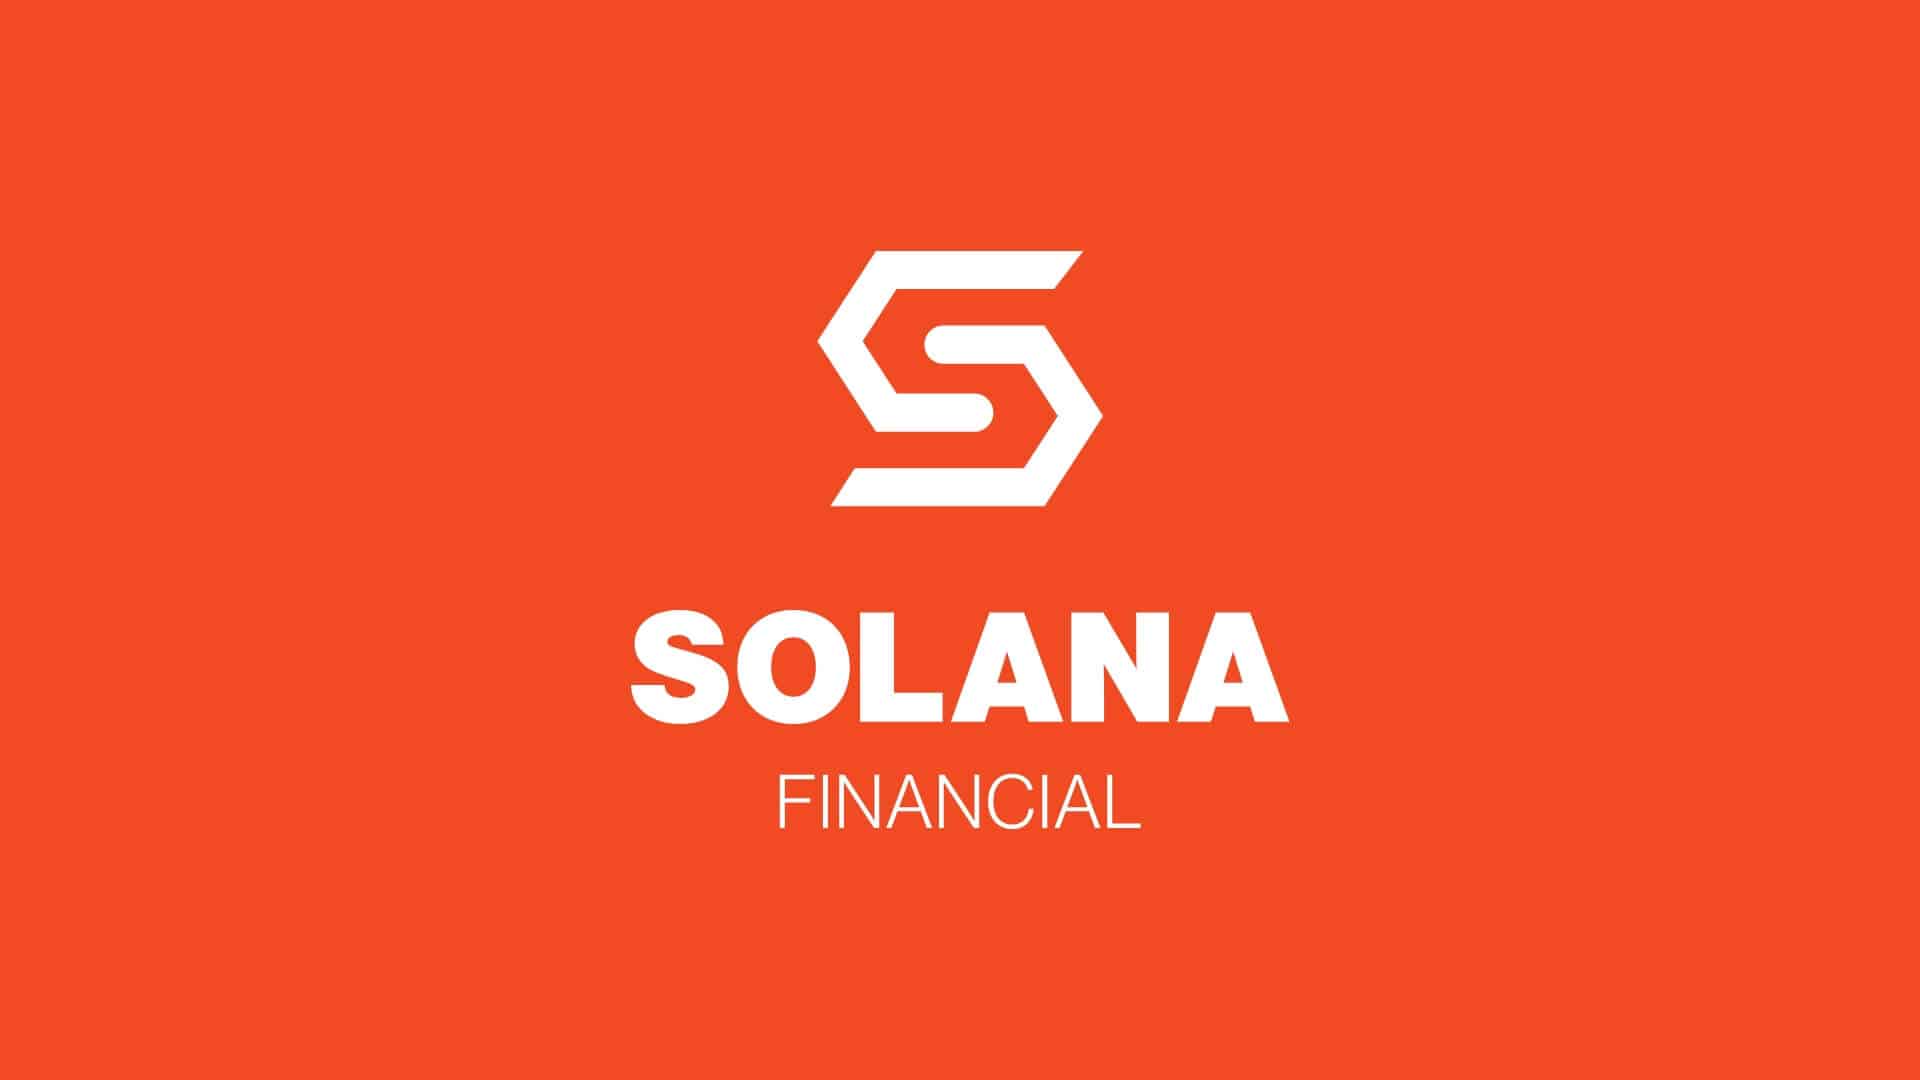 Solana Financial Logo Design